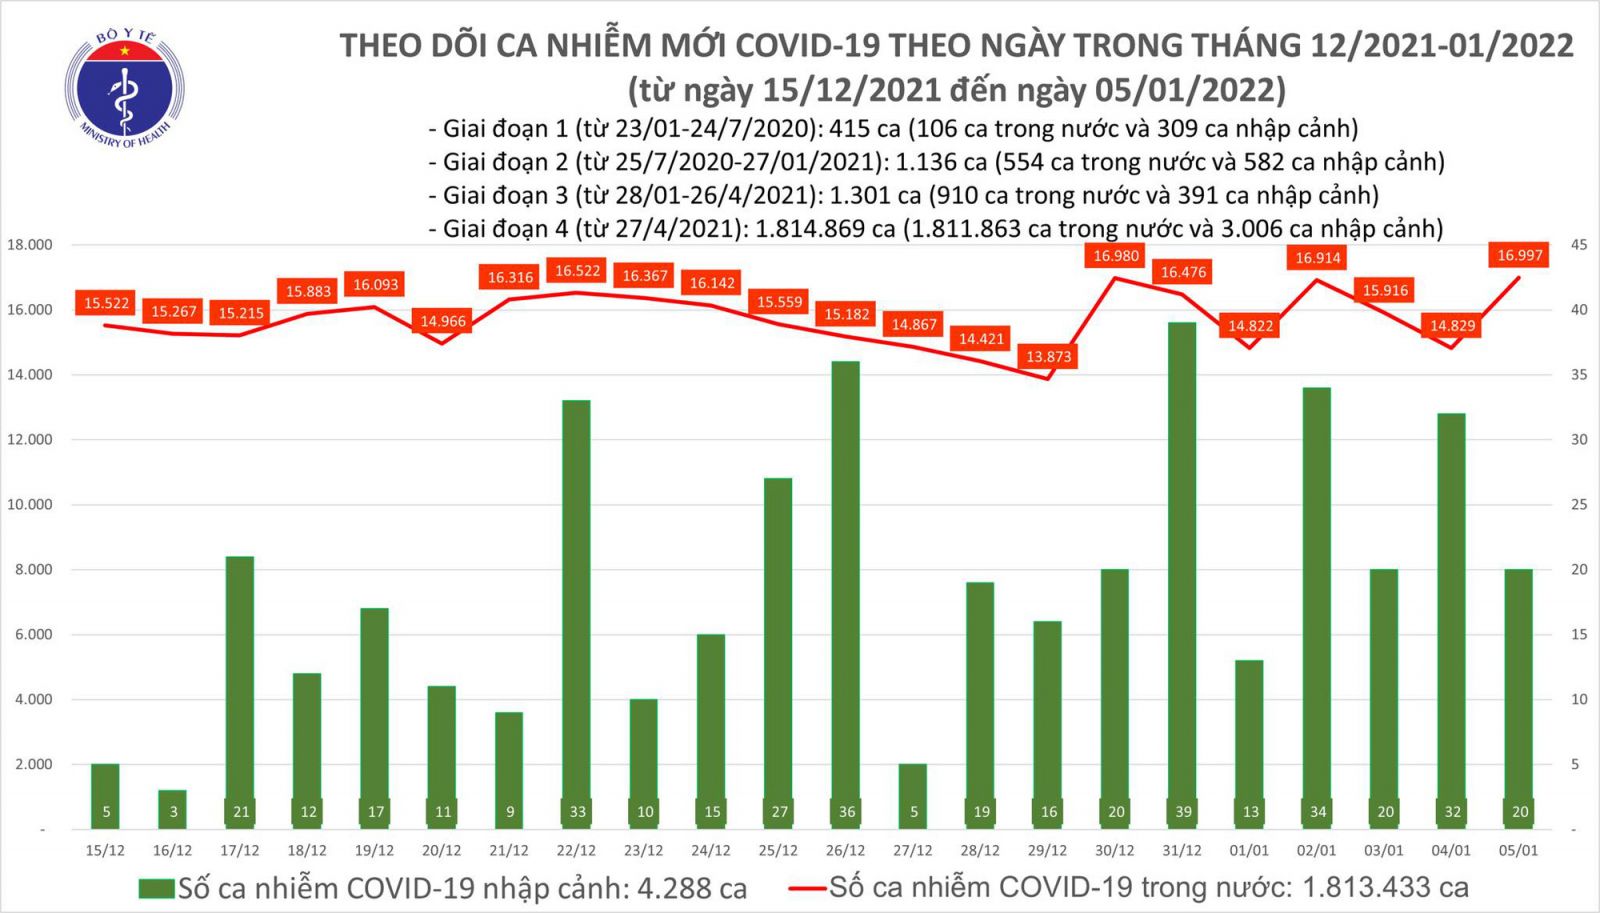 Ngày 5/1: Cả nước có 17.017 ca mắc COVID-19, Hà Nội vẫn nhiều nhất với 2.505 ca